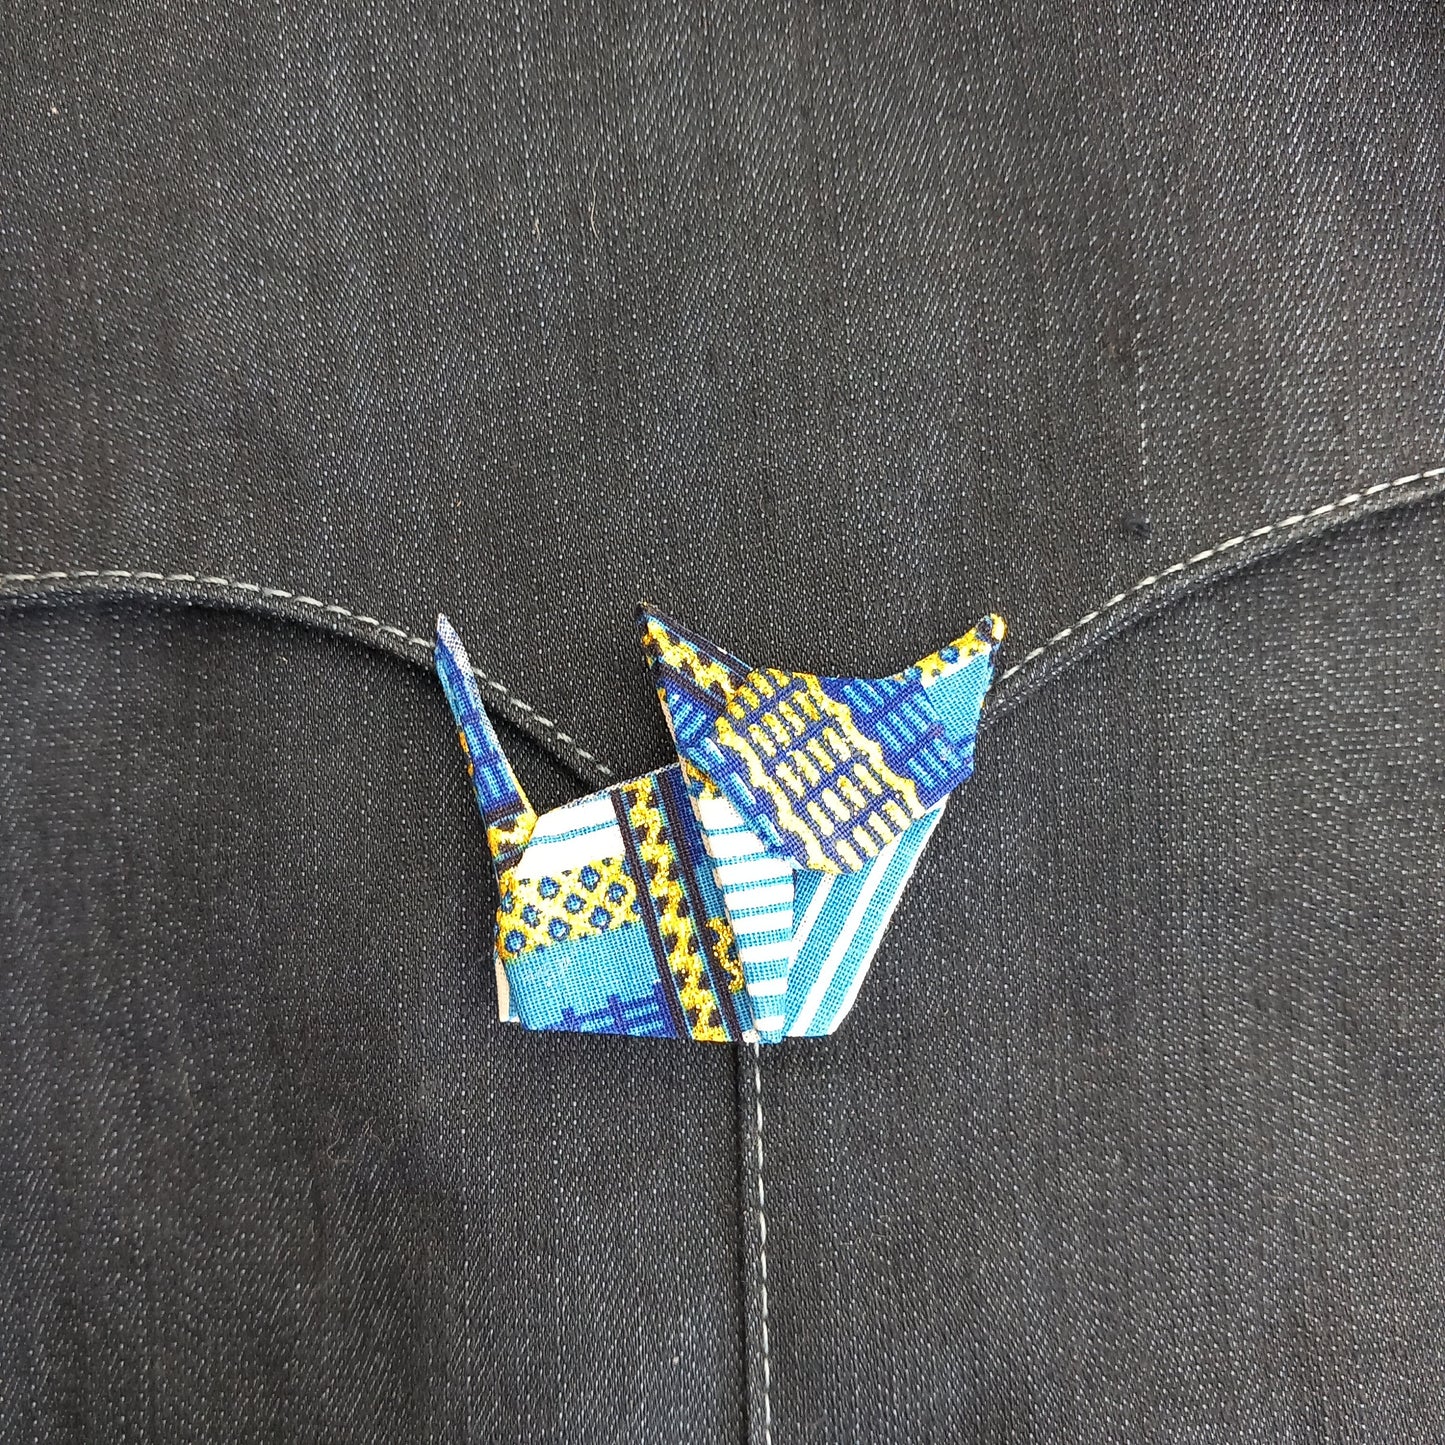 Cette broche "Chat" en tissu est le bijou unique et original pour illuminer vos tenues avec style - C'est le Printemps